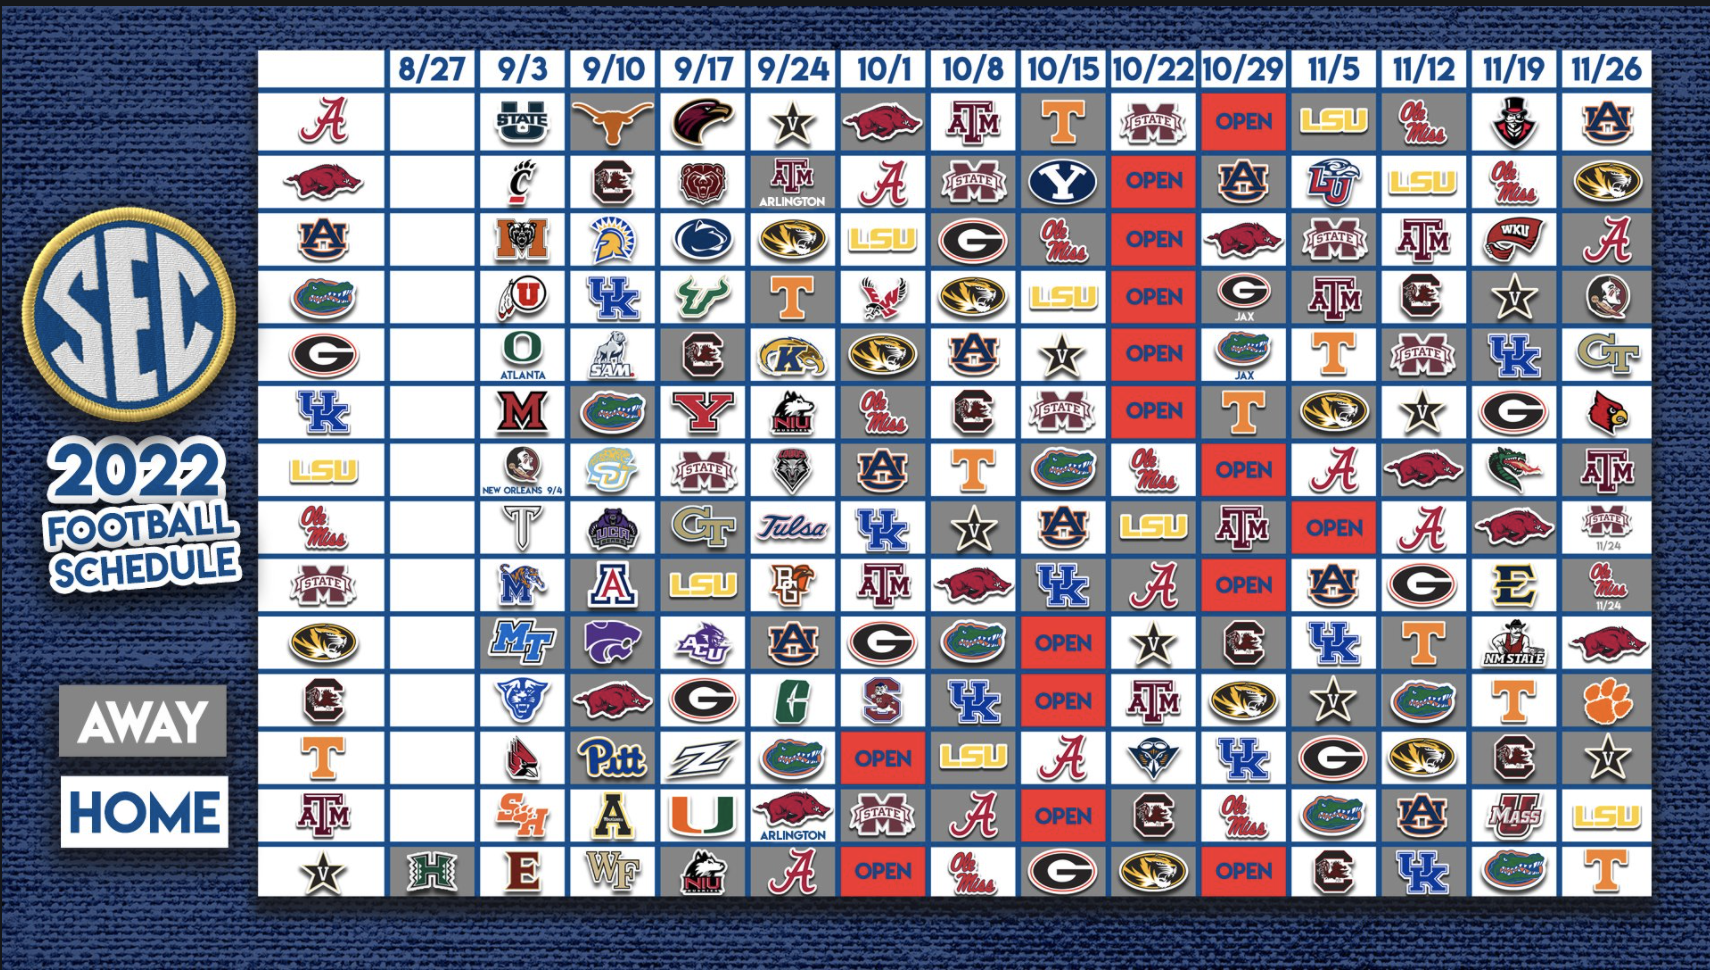 Georgia Bulldogs' 2022 schedule announced